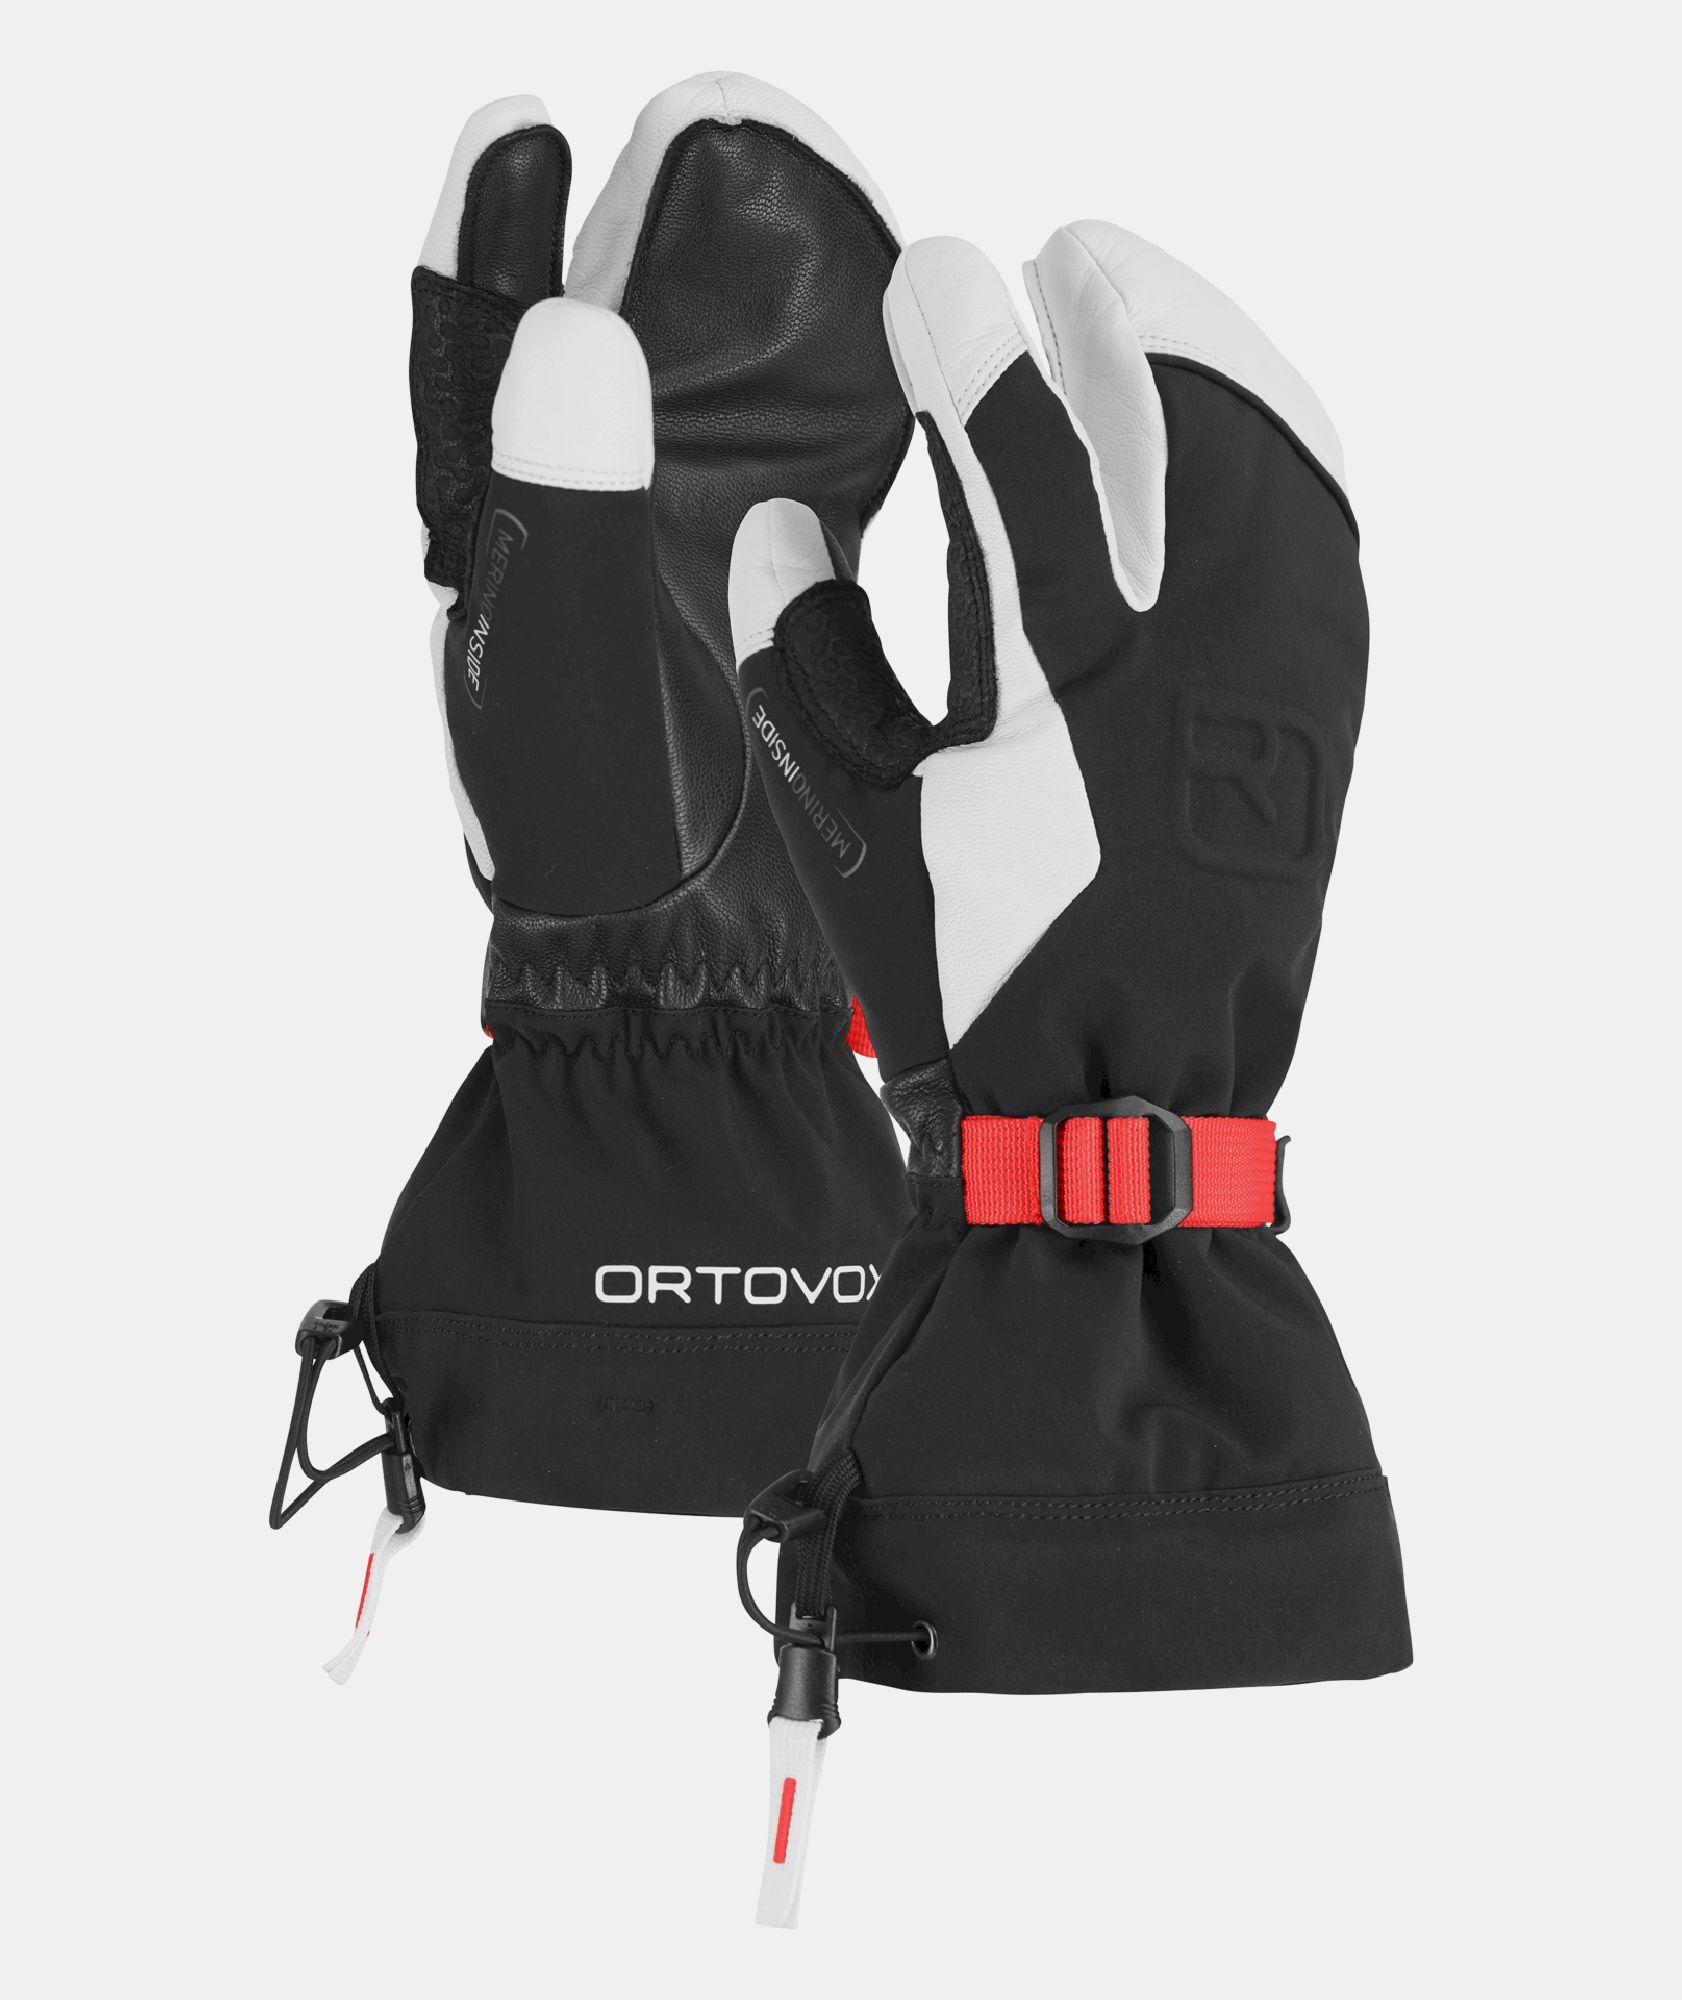 Ortovox Merino Freeride 3 Finger - Ski gloves - Women's